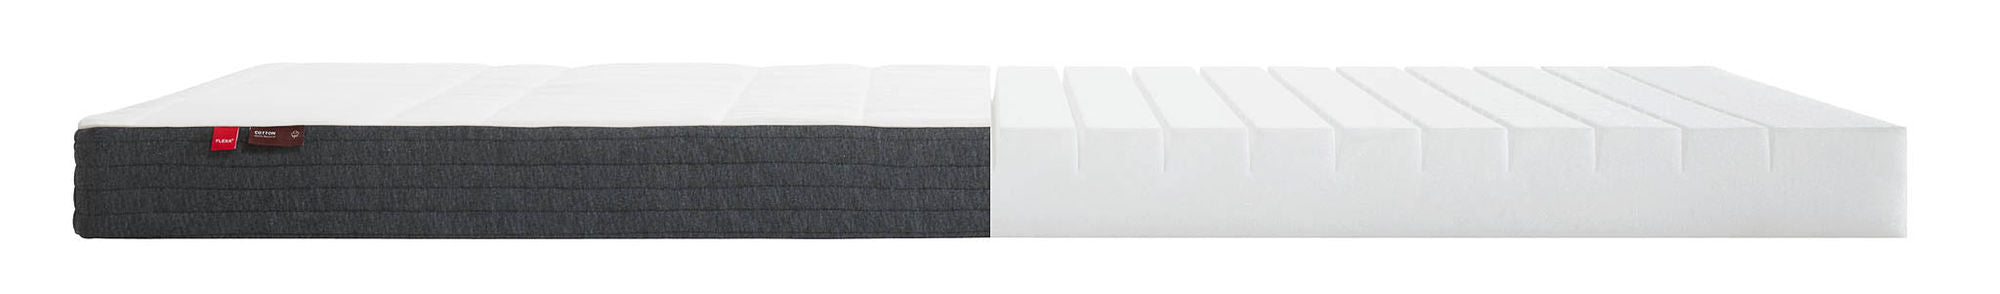 FLEXA FLEXA foam mattress, 200X90 cotton cover